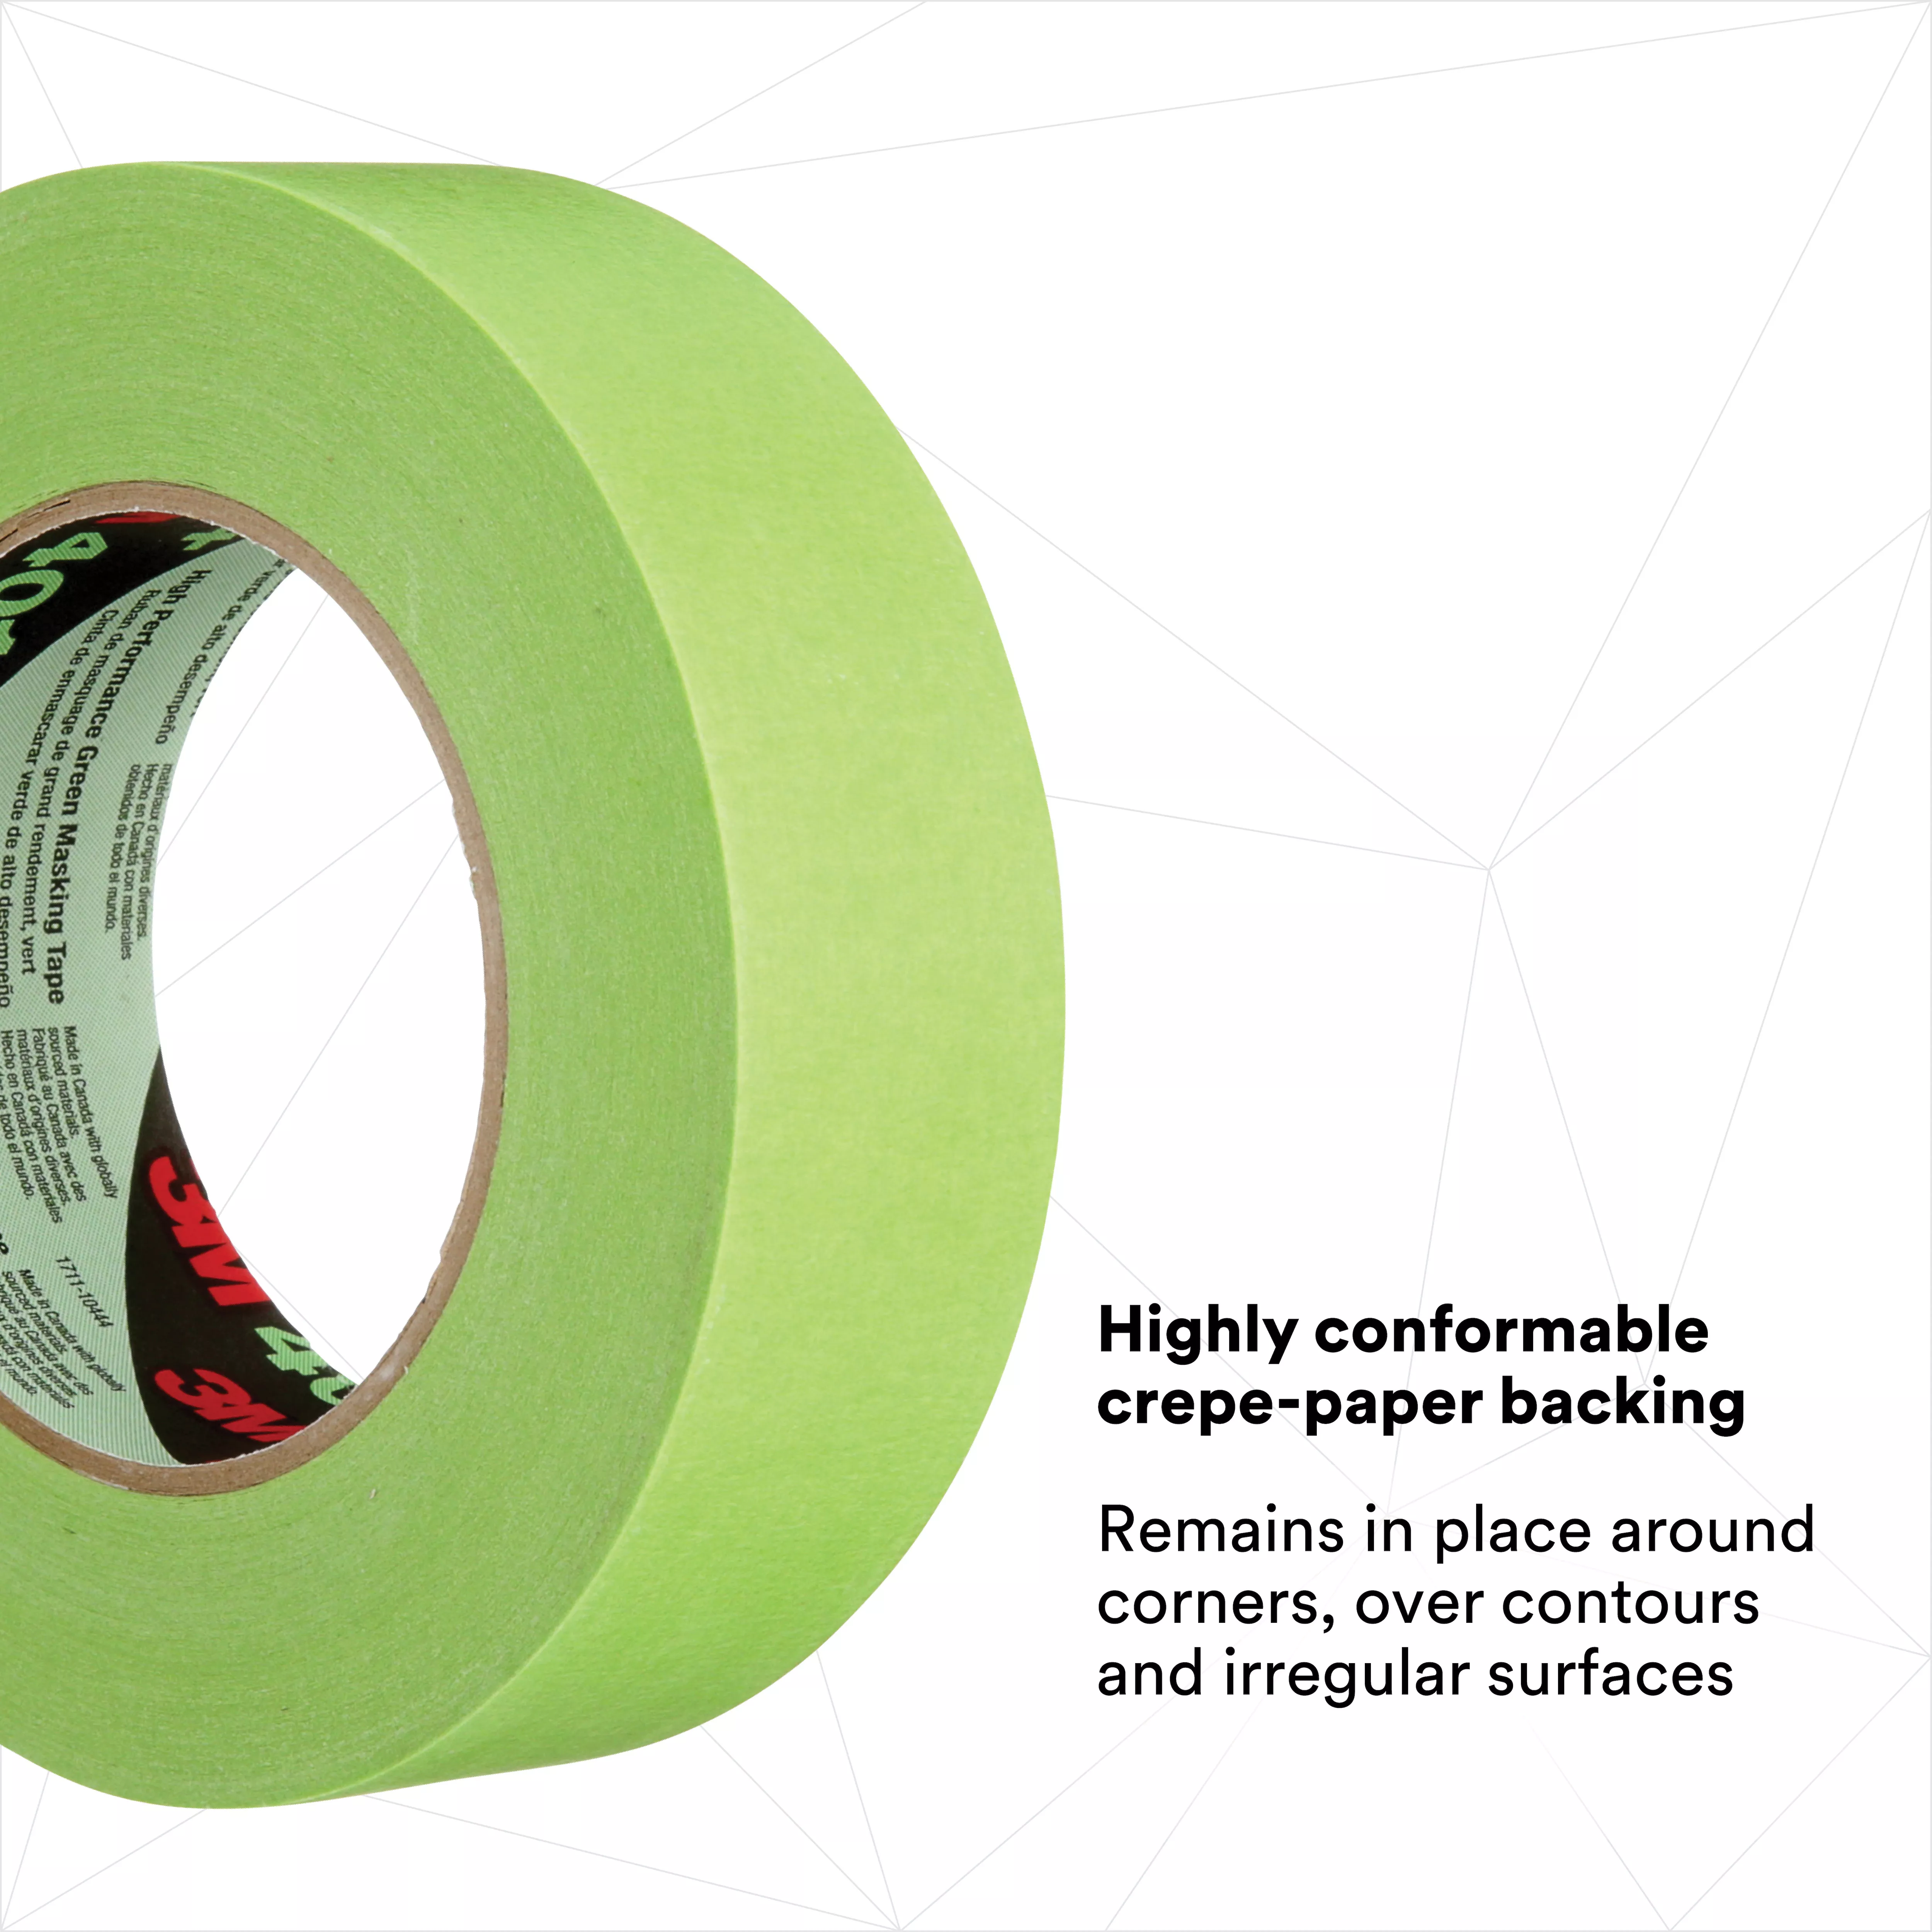 SKU 7000124897 | 3M™ High Performance Green Masking Tape 401+